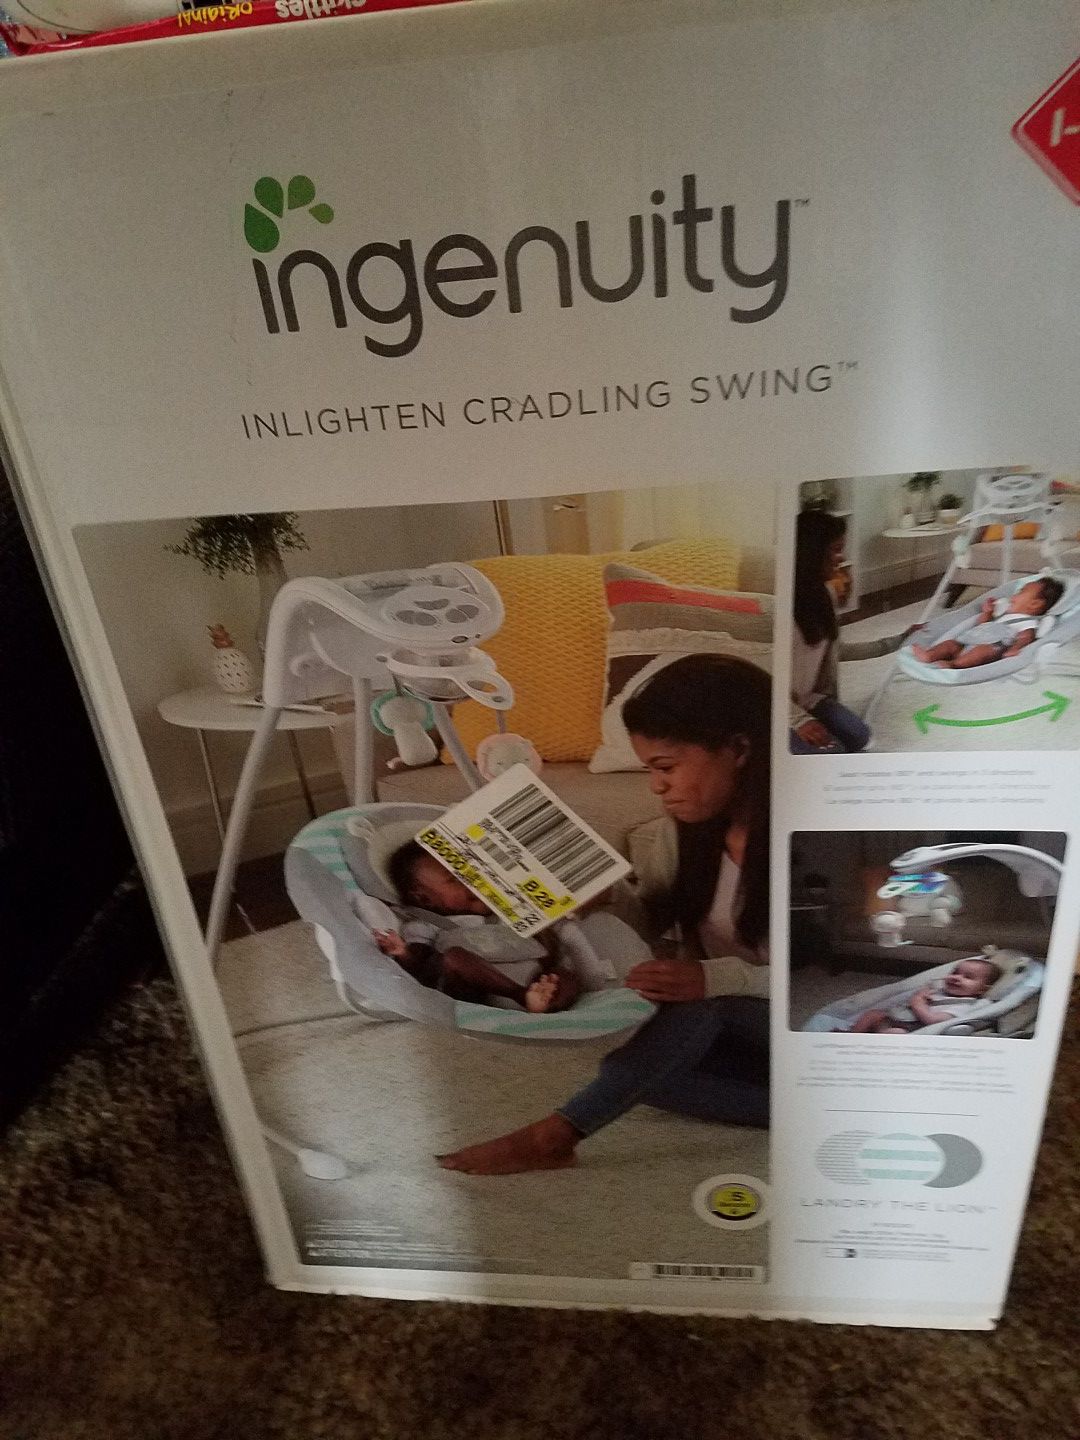 Ingenuity cradle baby swing